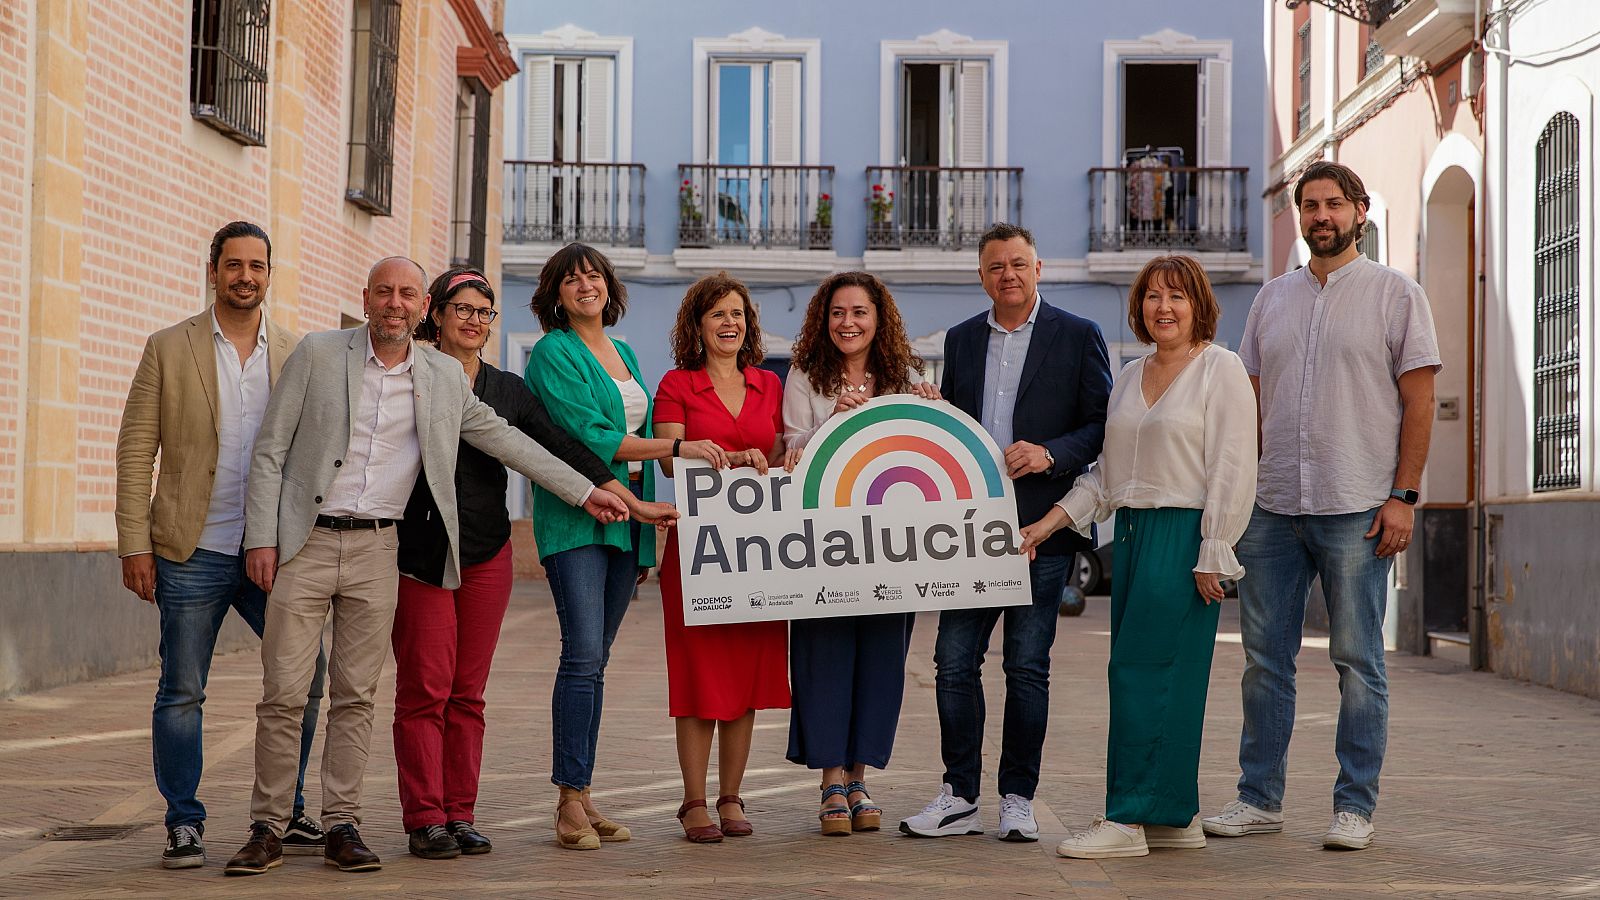 Por Andalucía escenifica su unidad tras los choques en la coalición